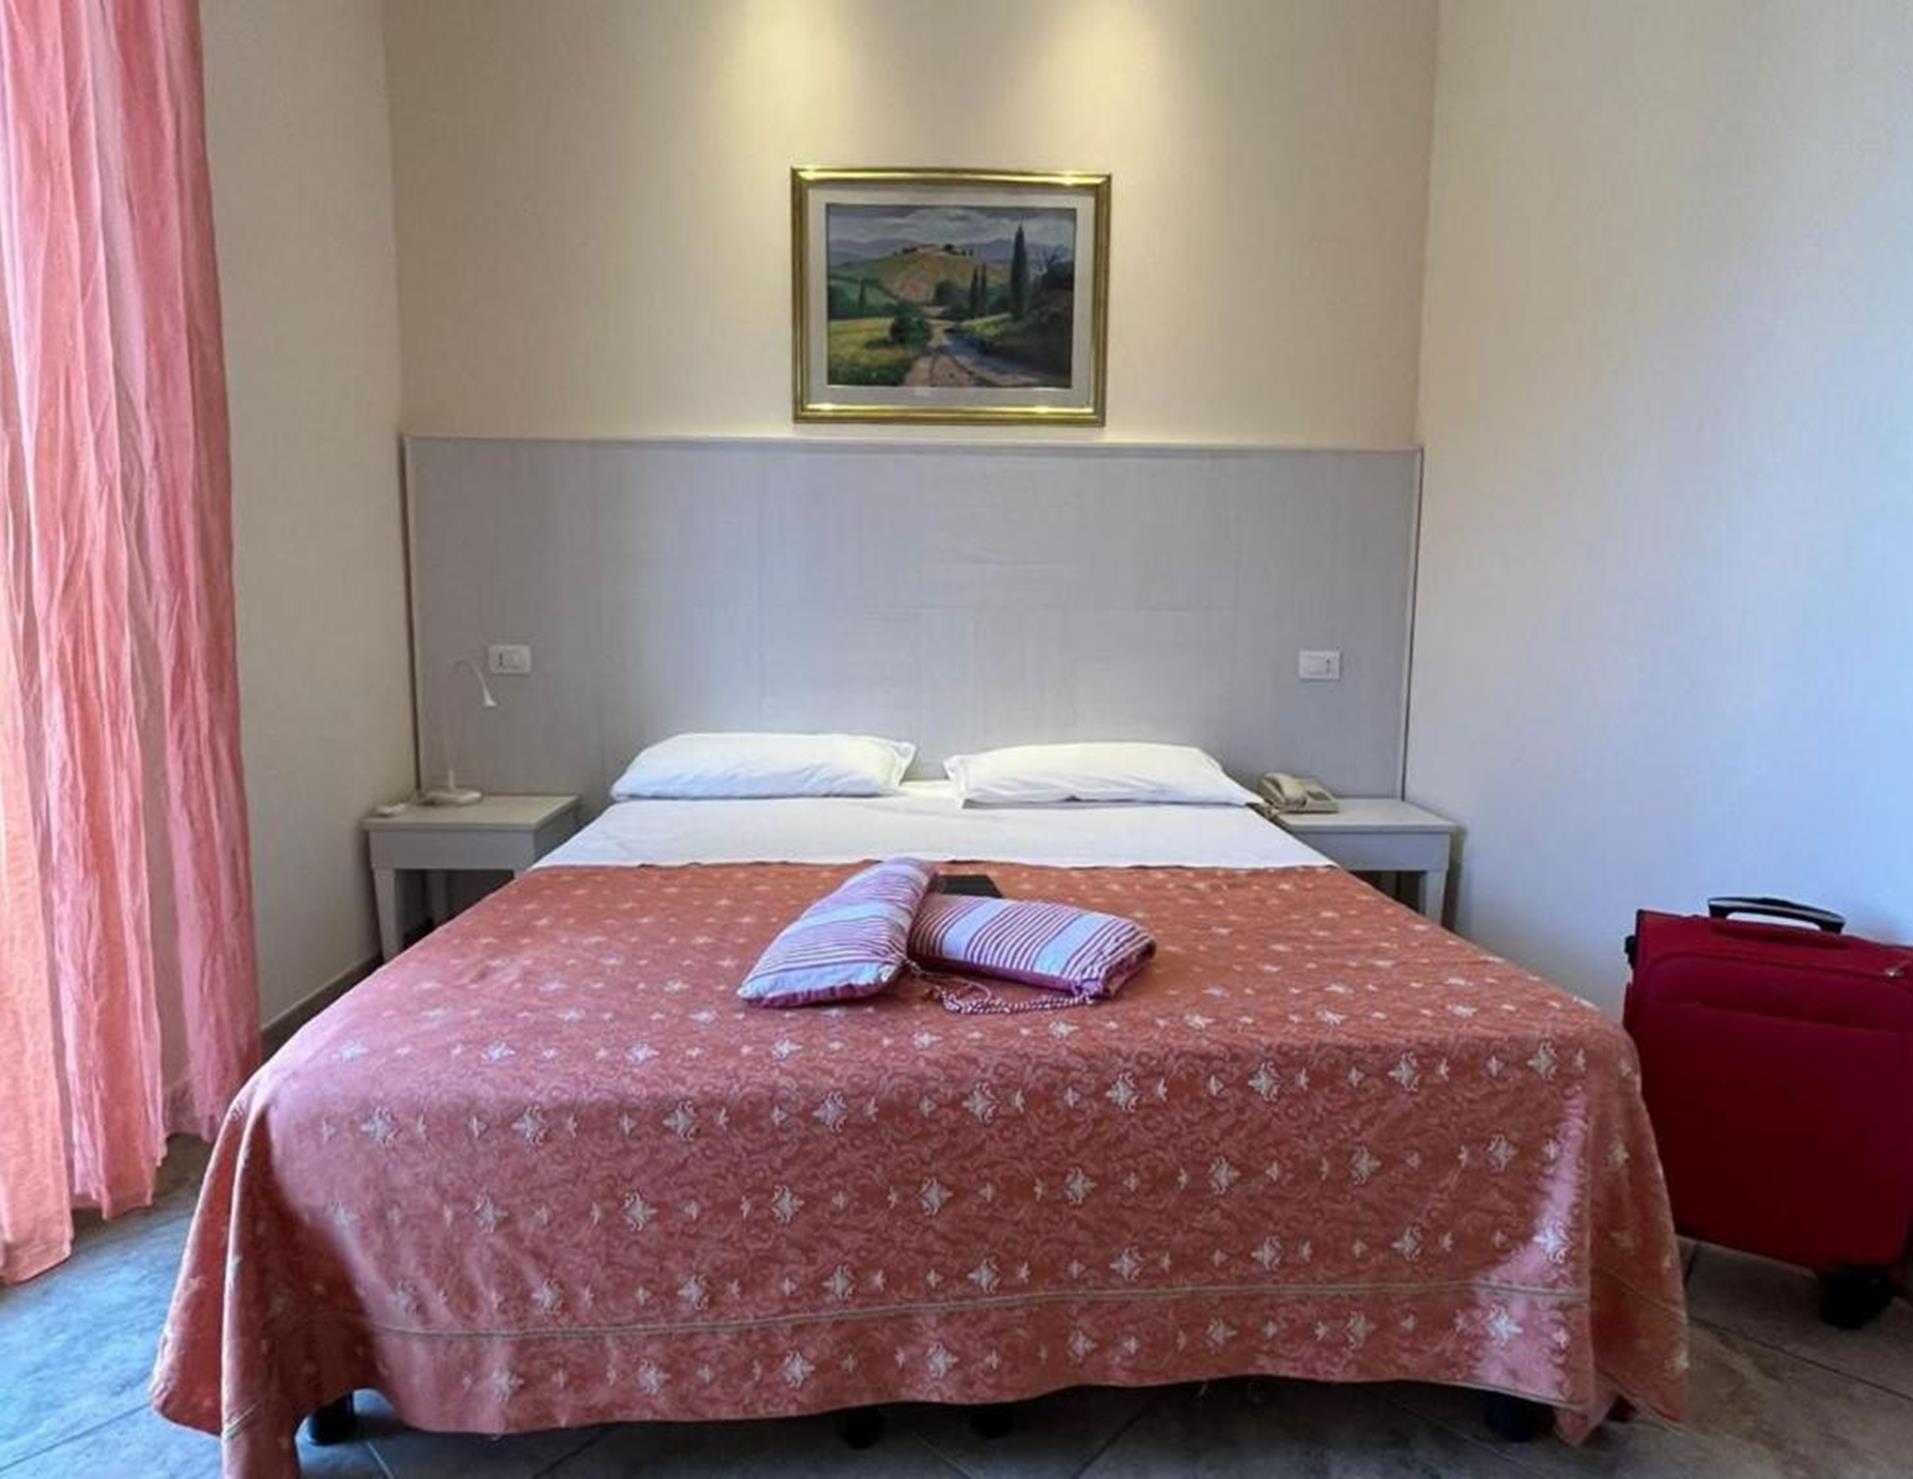 Hotel Franca - Room 3